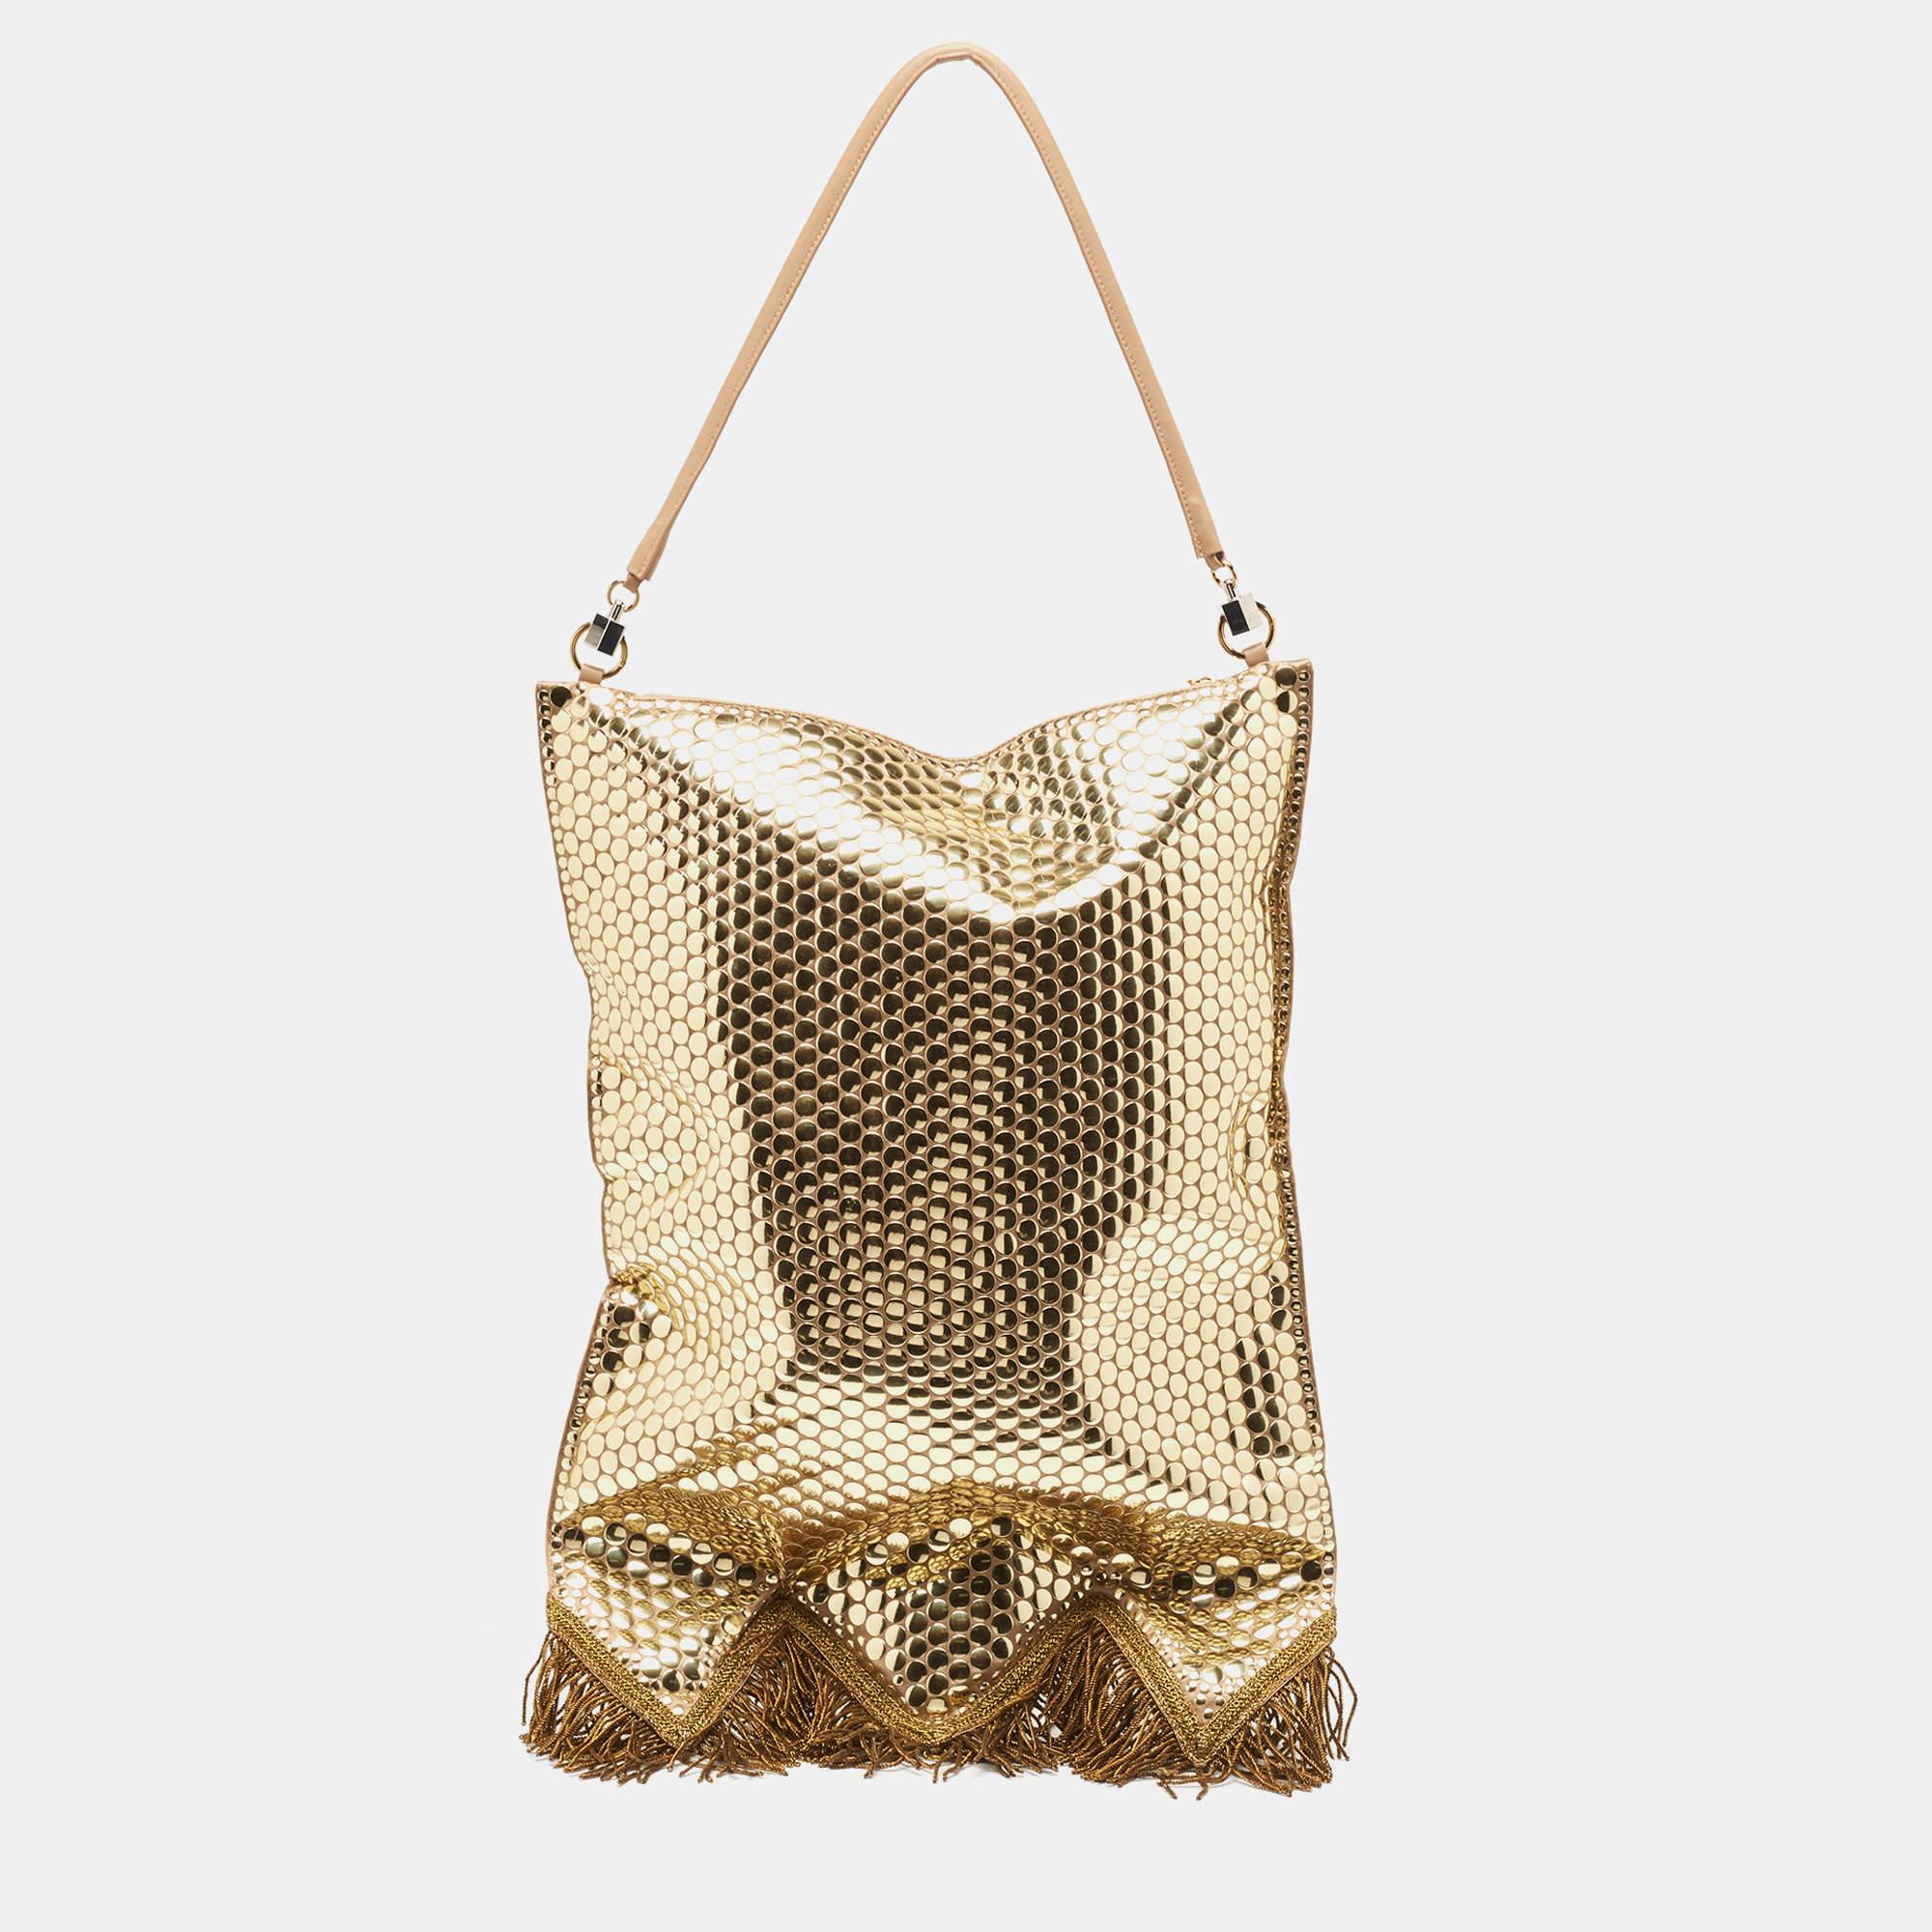 Le sac Burberry est un accessoire de mode luxueux. Il se compose d'un corps en satin orné de franges en lingots d'or et d'embellissements en paillettes scintillantes. Cette pièce d'apparat respire l'élégance et l'héritage britannique.

Comprend :